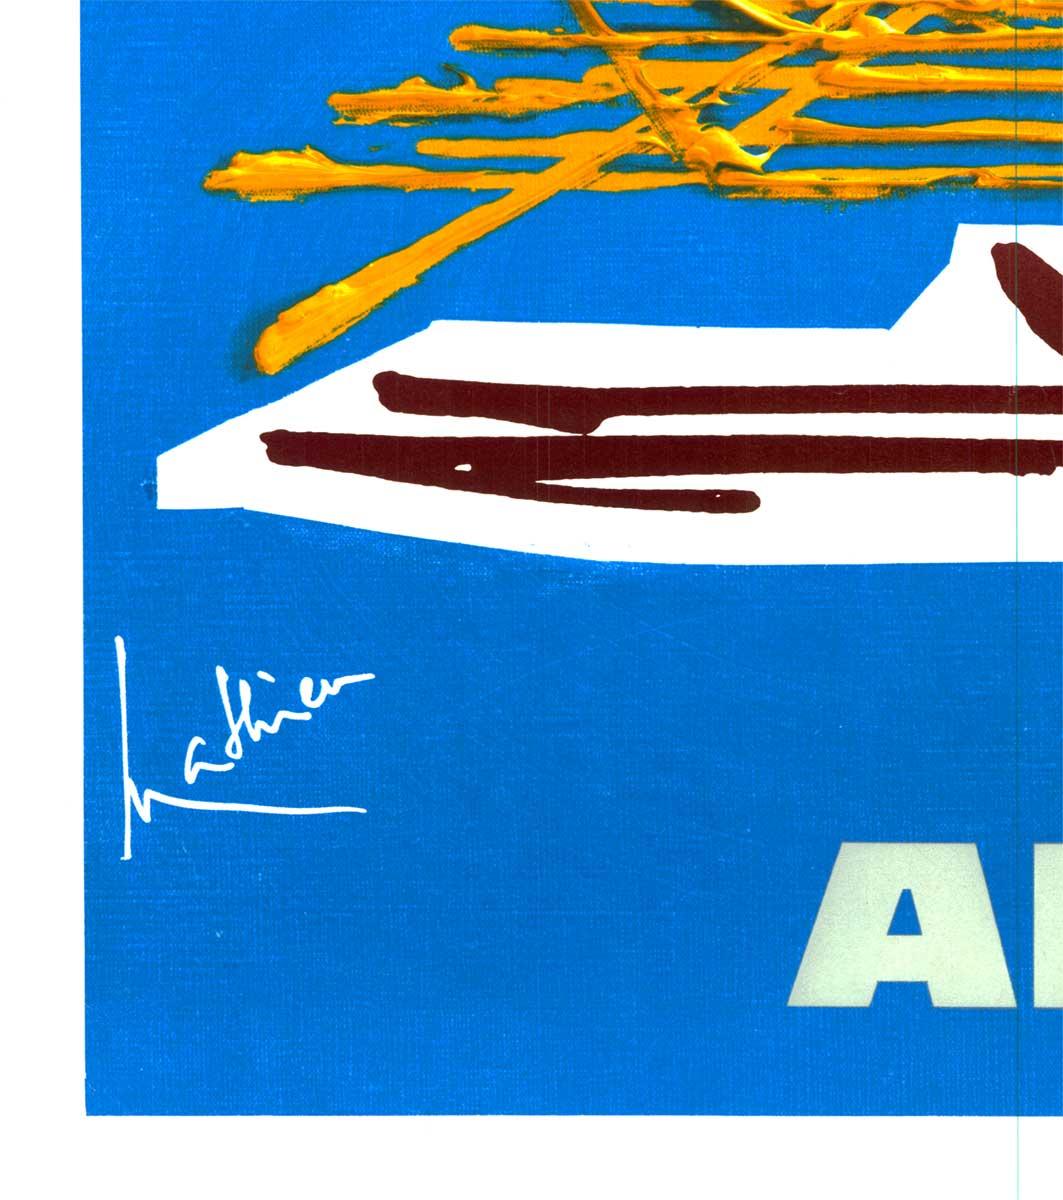 Original Air France Grece vintage Reiseplakat.
Leinengebundenes Original-Reiseplakat von Air France nach Griechenland.   Stilisierte griechische Säulen und der Parthenon in Athen, Griechenland, vor einem mediterranen blauen Hintergrund.   Sehr guter